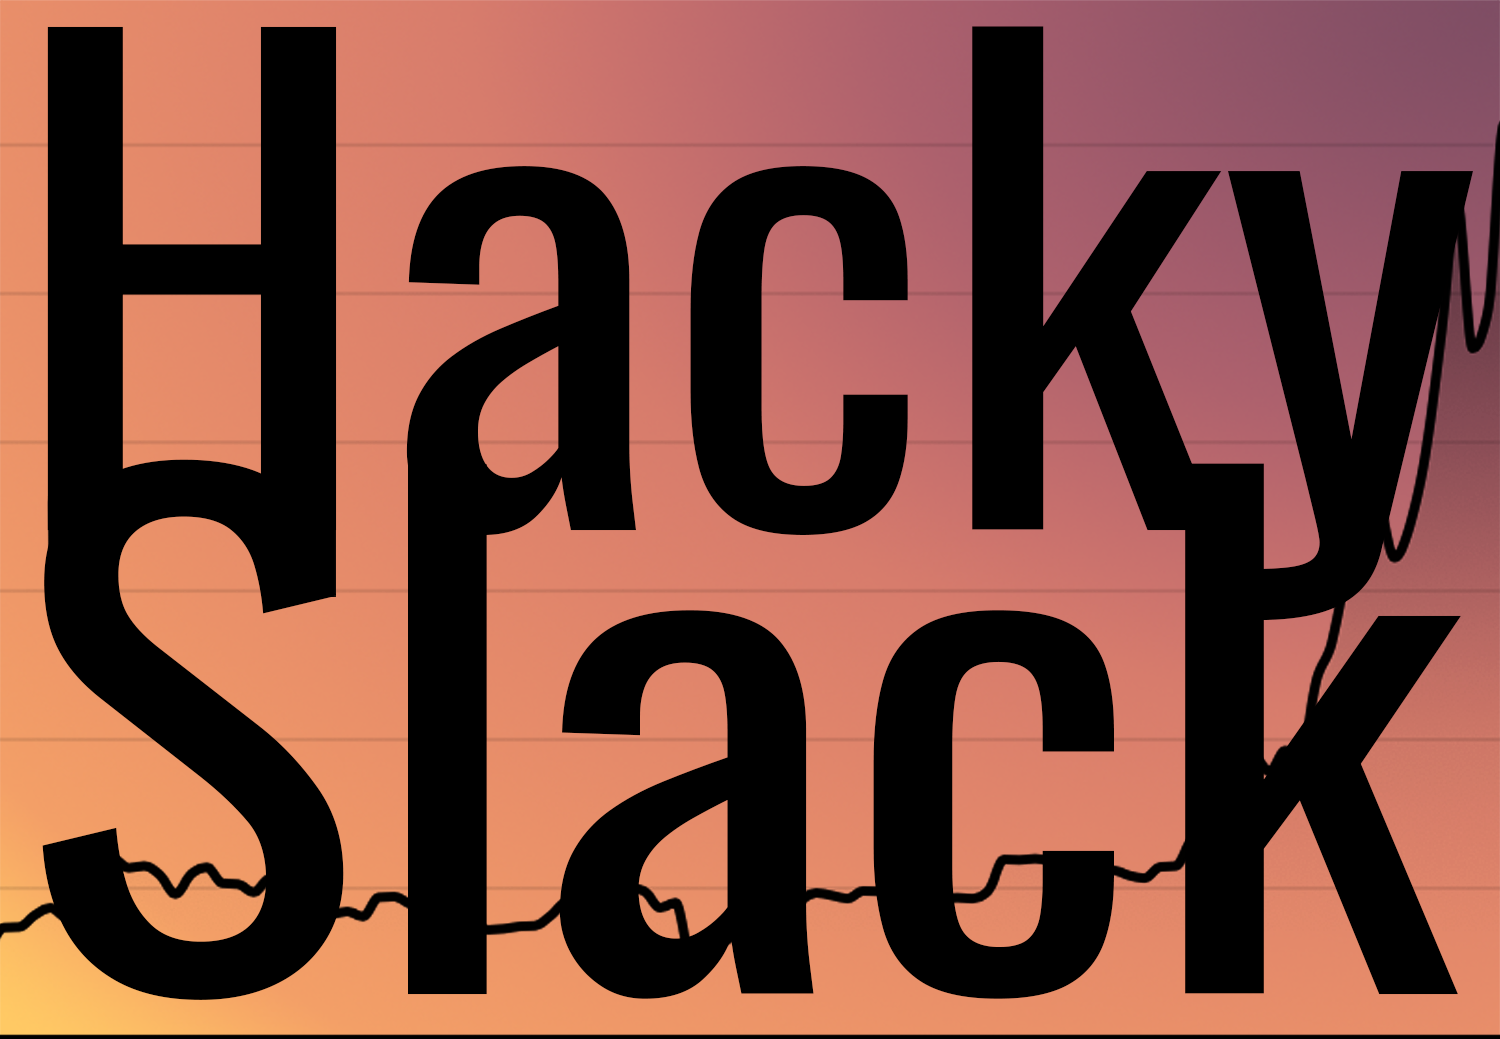 Hacky Slack and Bitcoin